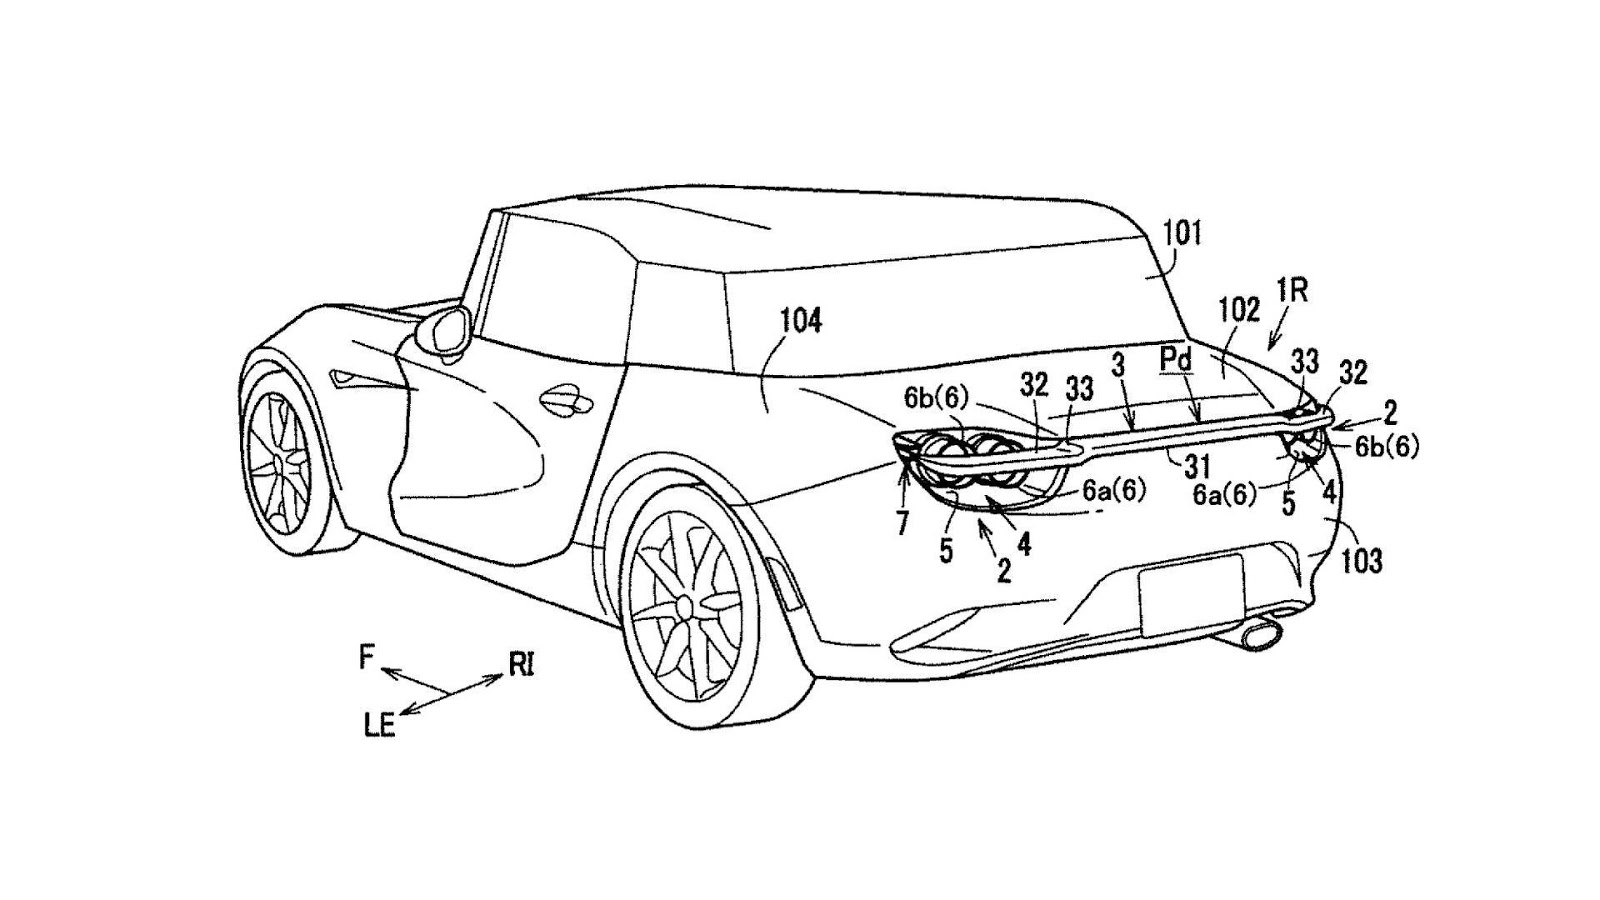 International, paten teknologi spoiler mazda: Mazda Patenkan Spoiler Baru, Mungkin Buat RX-Vision